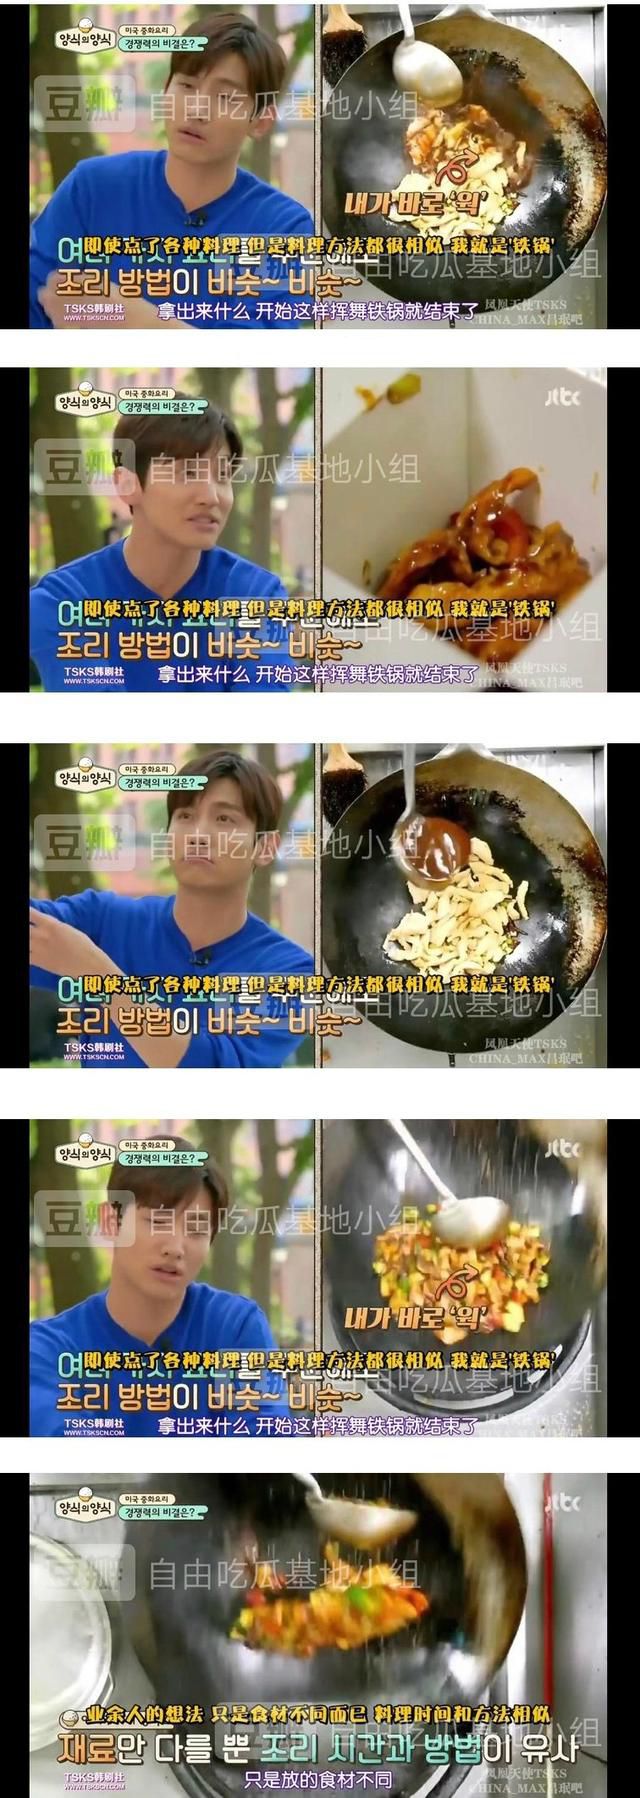 韩国男星炮轰中国美食 直言 料理简单乏味 做出来都一个味道 今日焦点